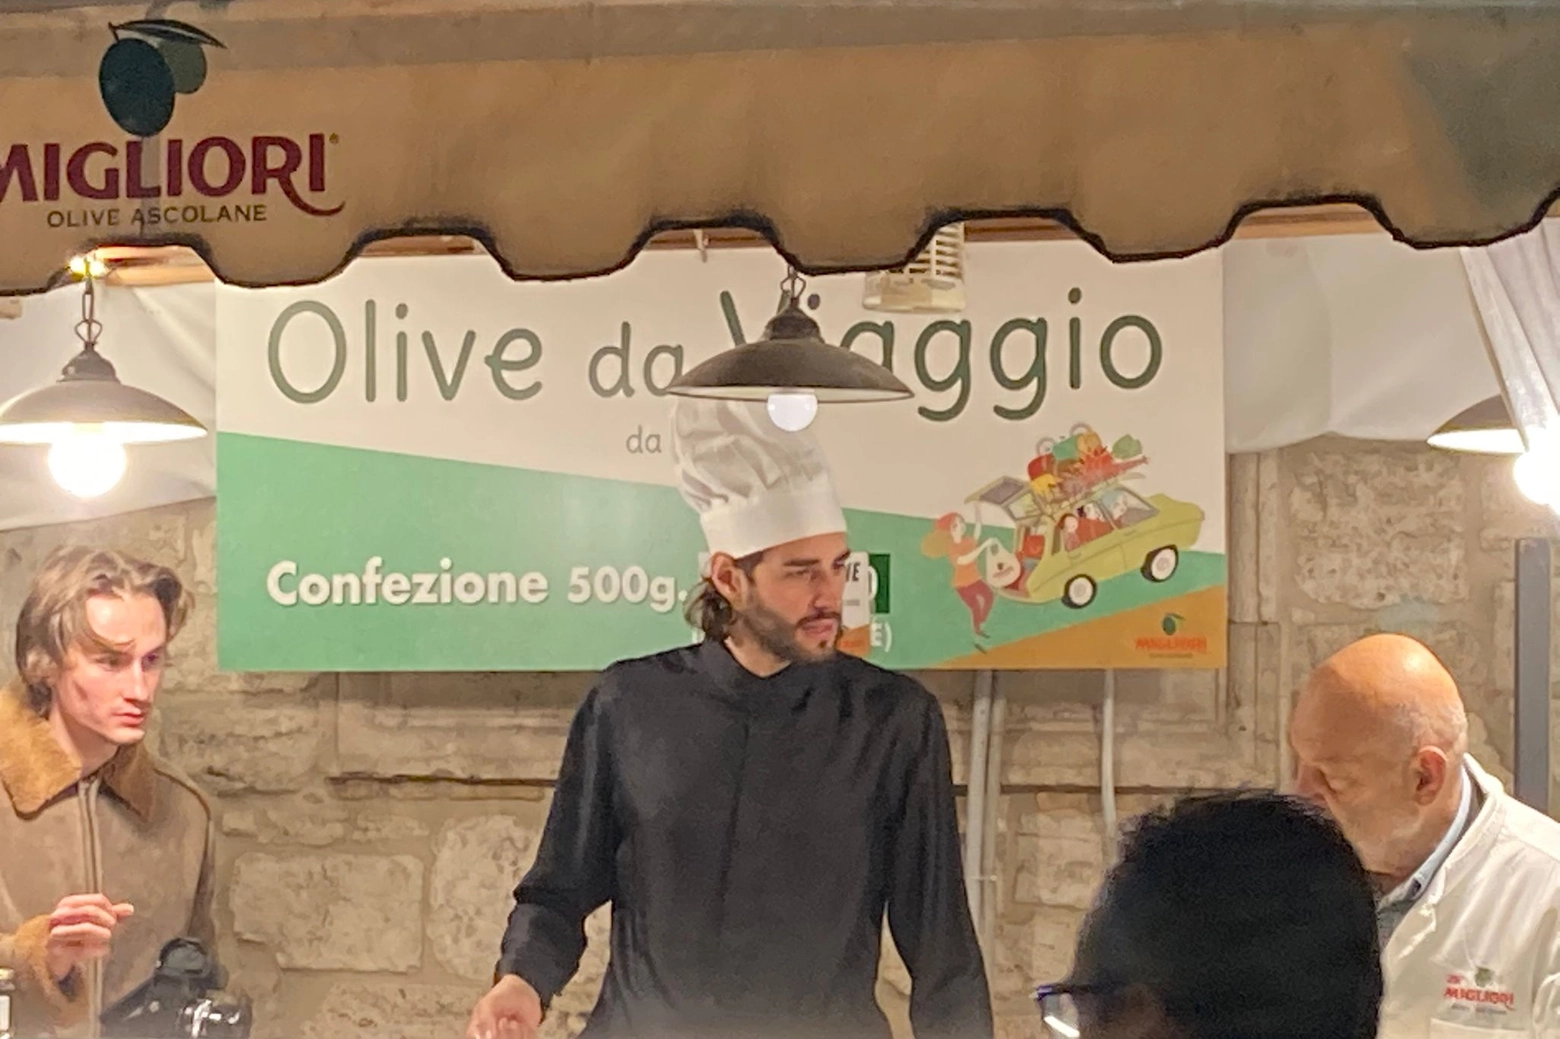 Gianmarco Tamberi nello stand delle olive all'ascolana con Zè Migliori